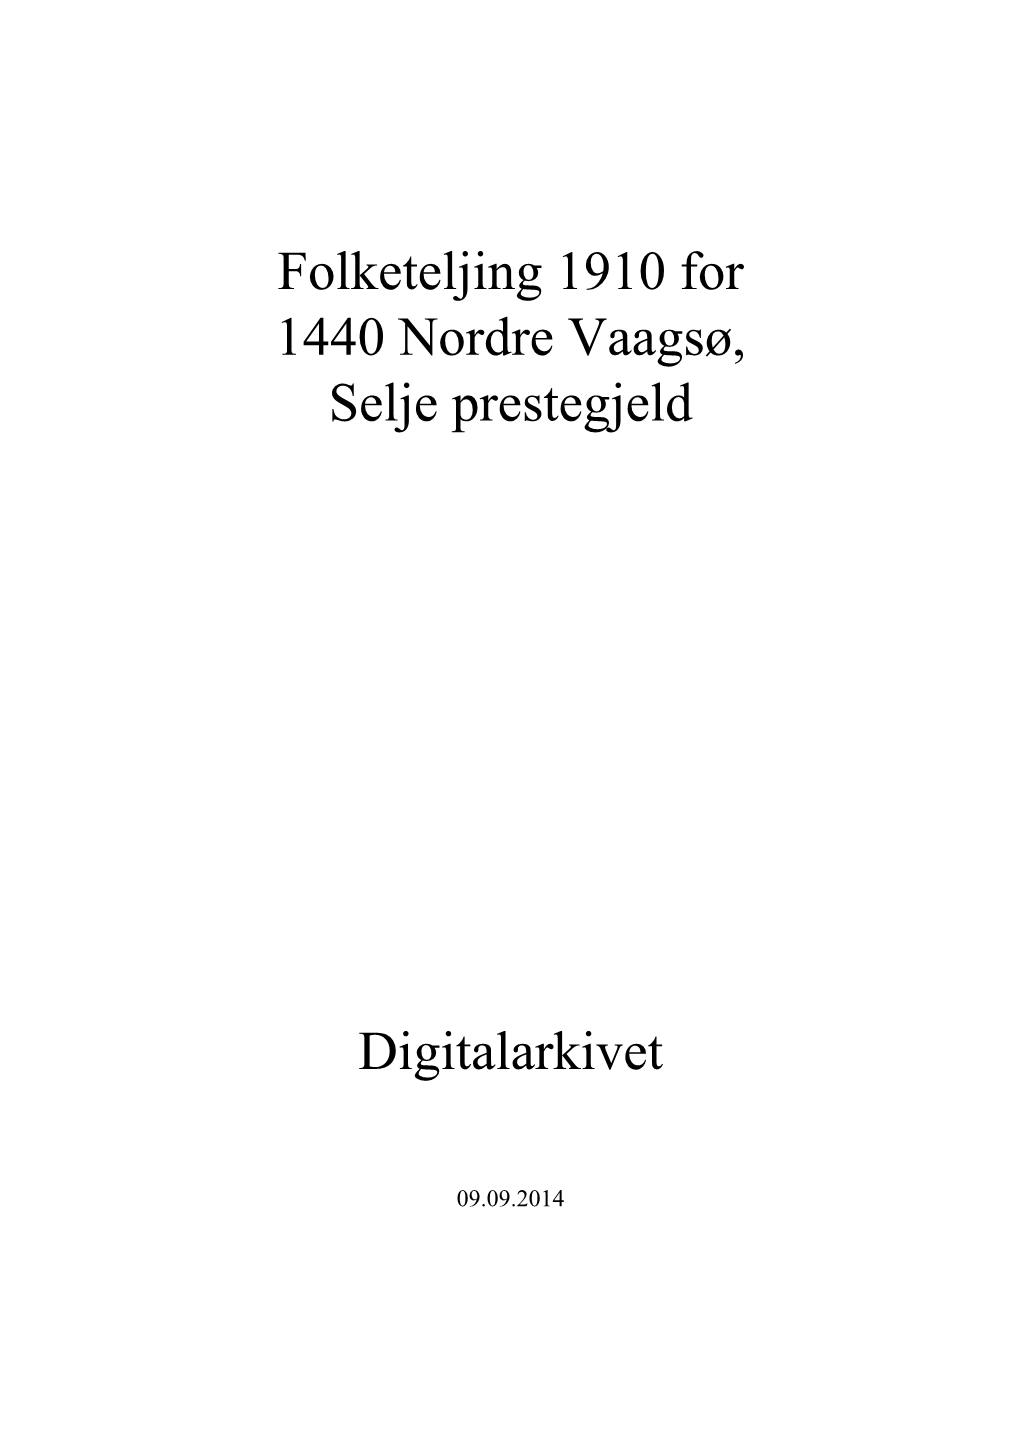 Folketeljing 1910 for 1440 Nordre Vaagsø, Selje Prestegjeld